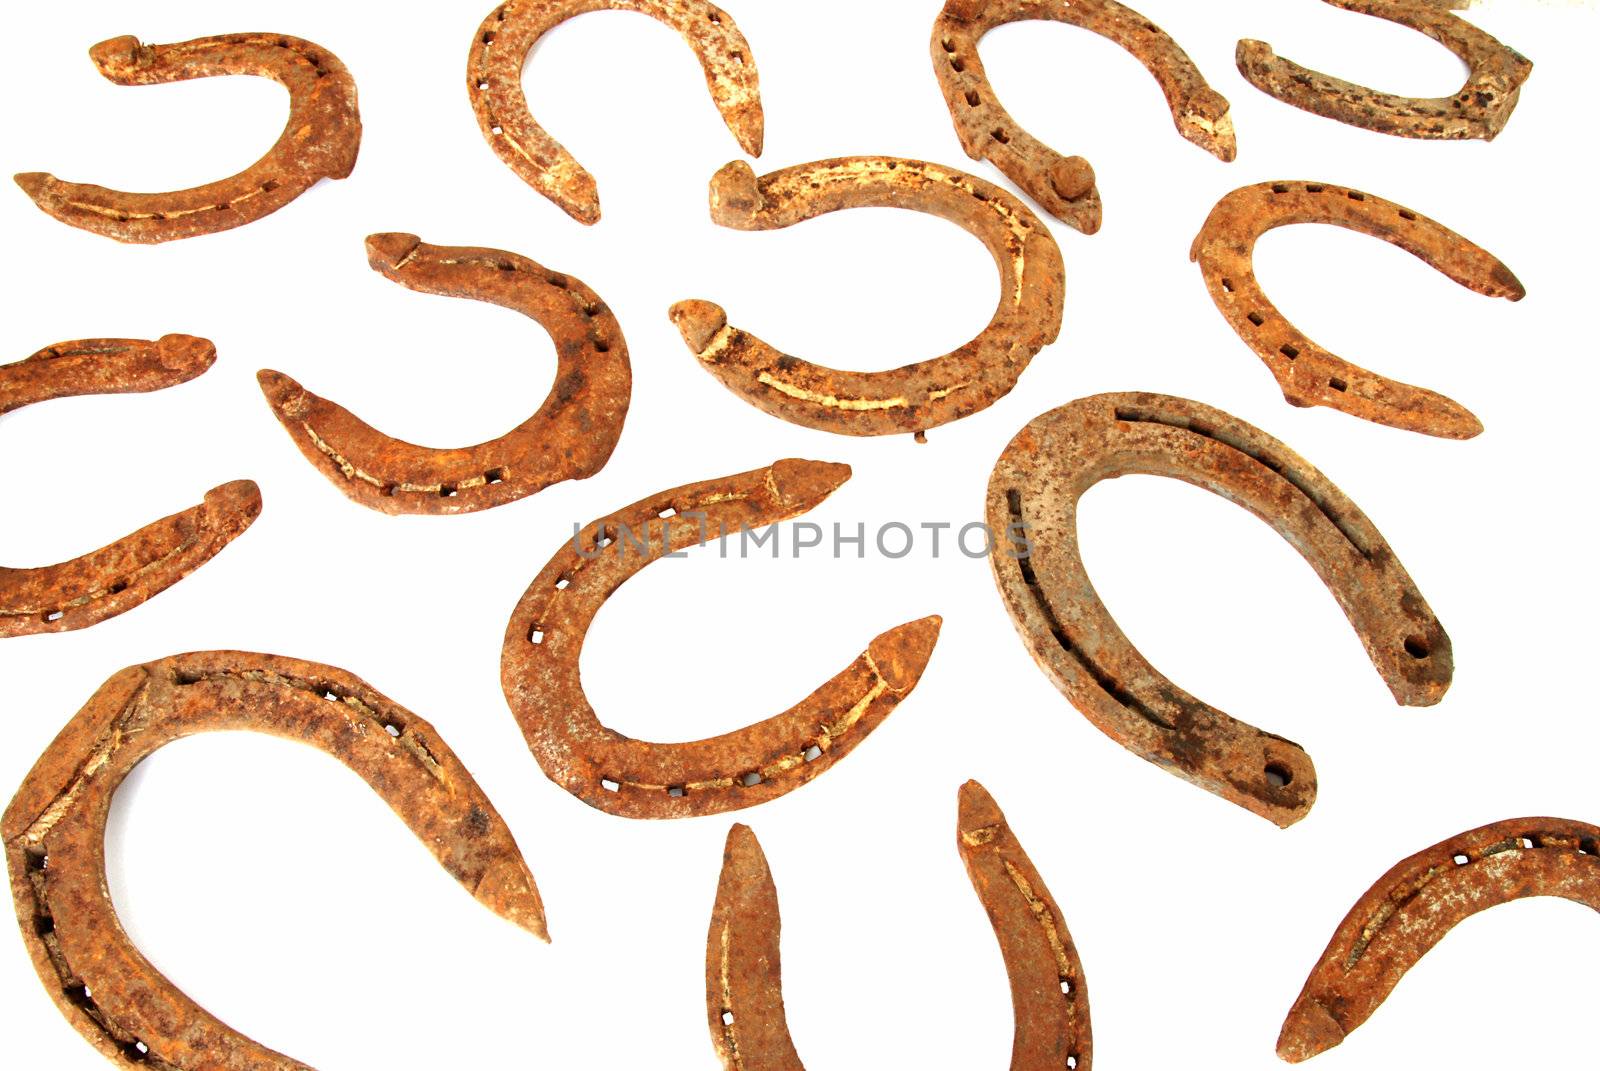 Rusty horseshoes by drakodav